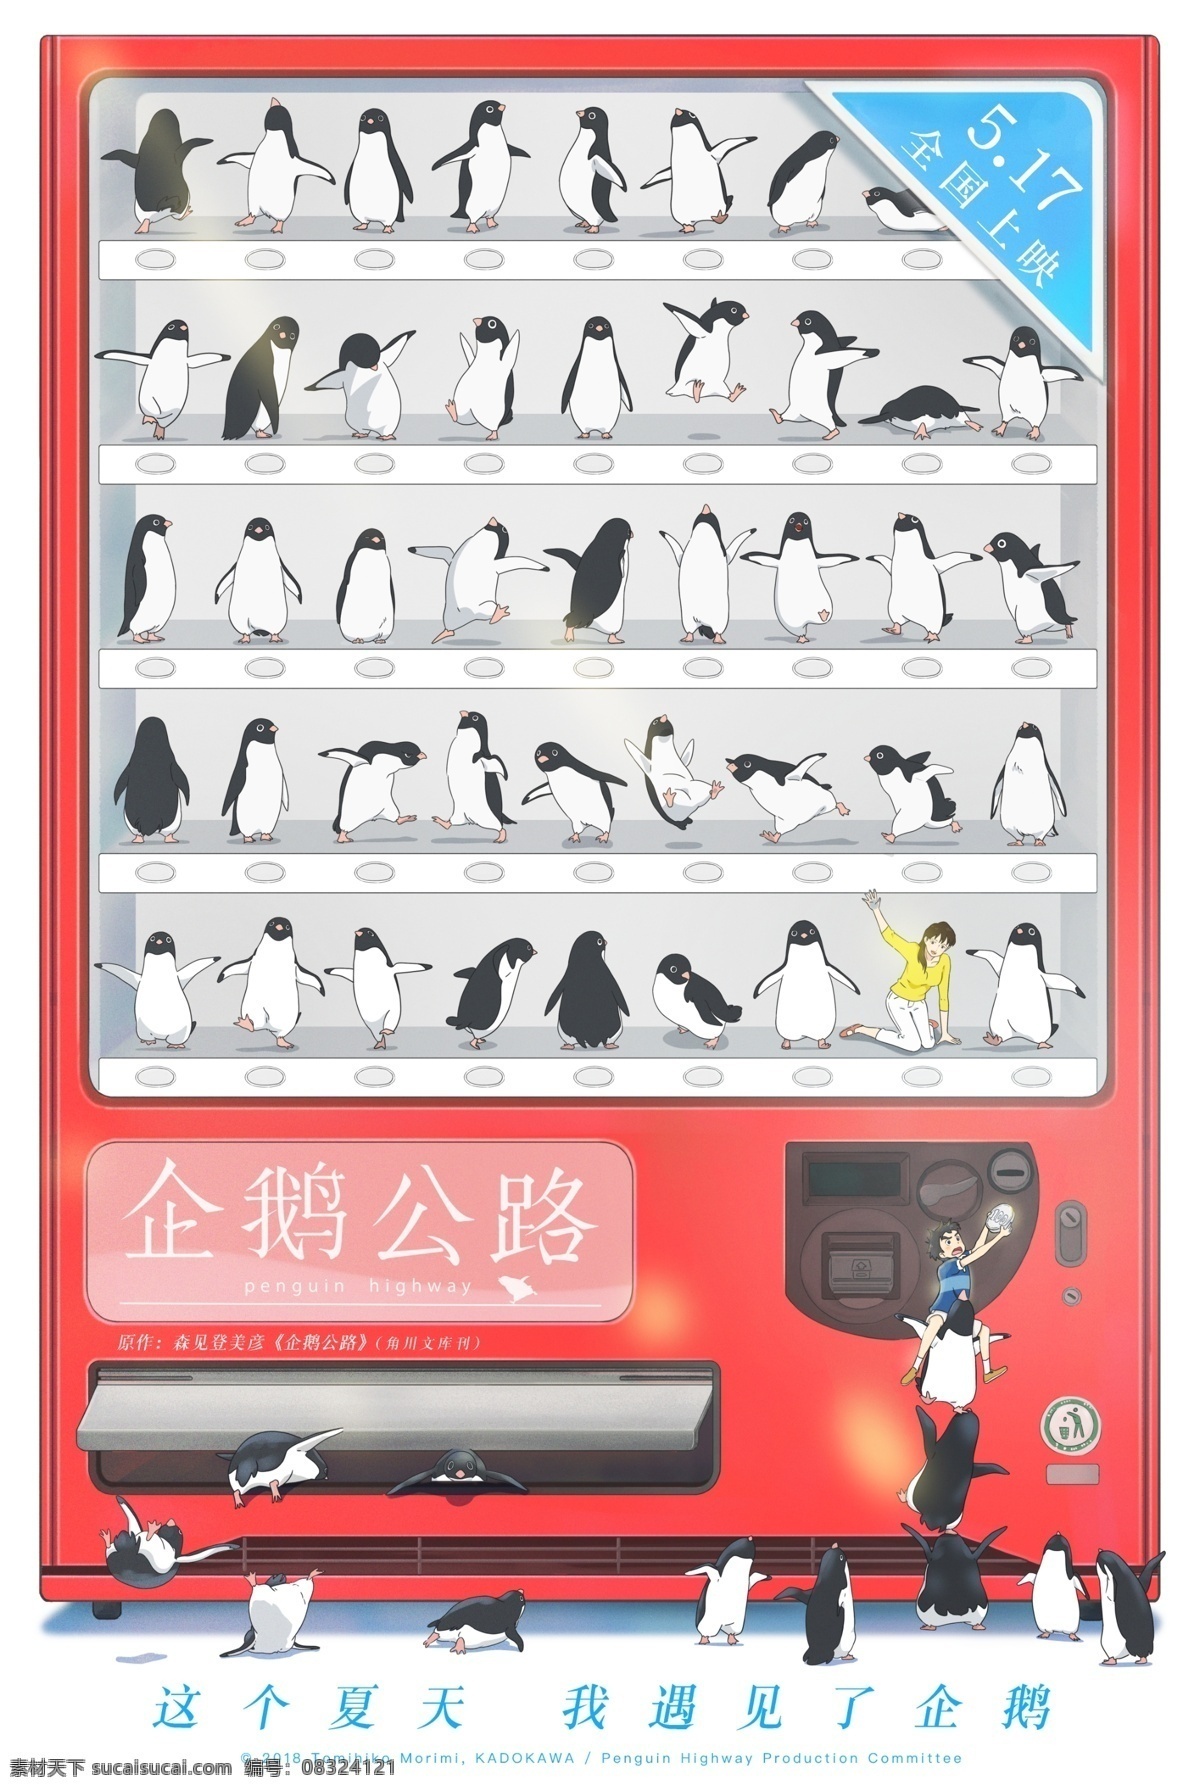 电影企鹅公路 贩卖机 版 海报 分层 电影 企鹅公路 日本 动漫 卡通 动画 预告 售饭机 动画电影海报 文化艺术 影视娱乐